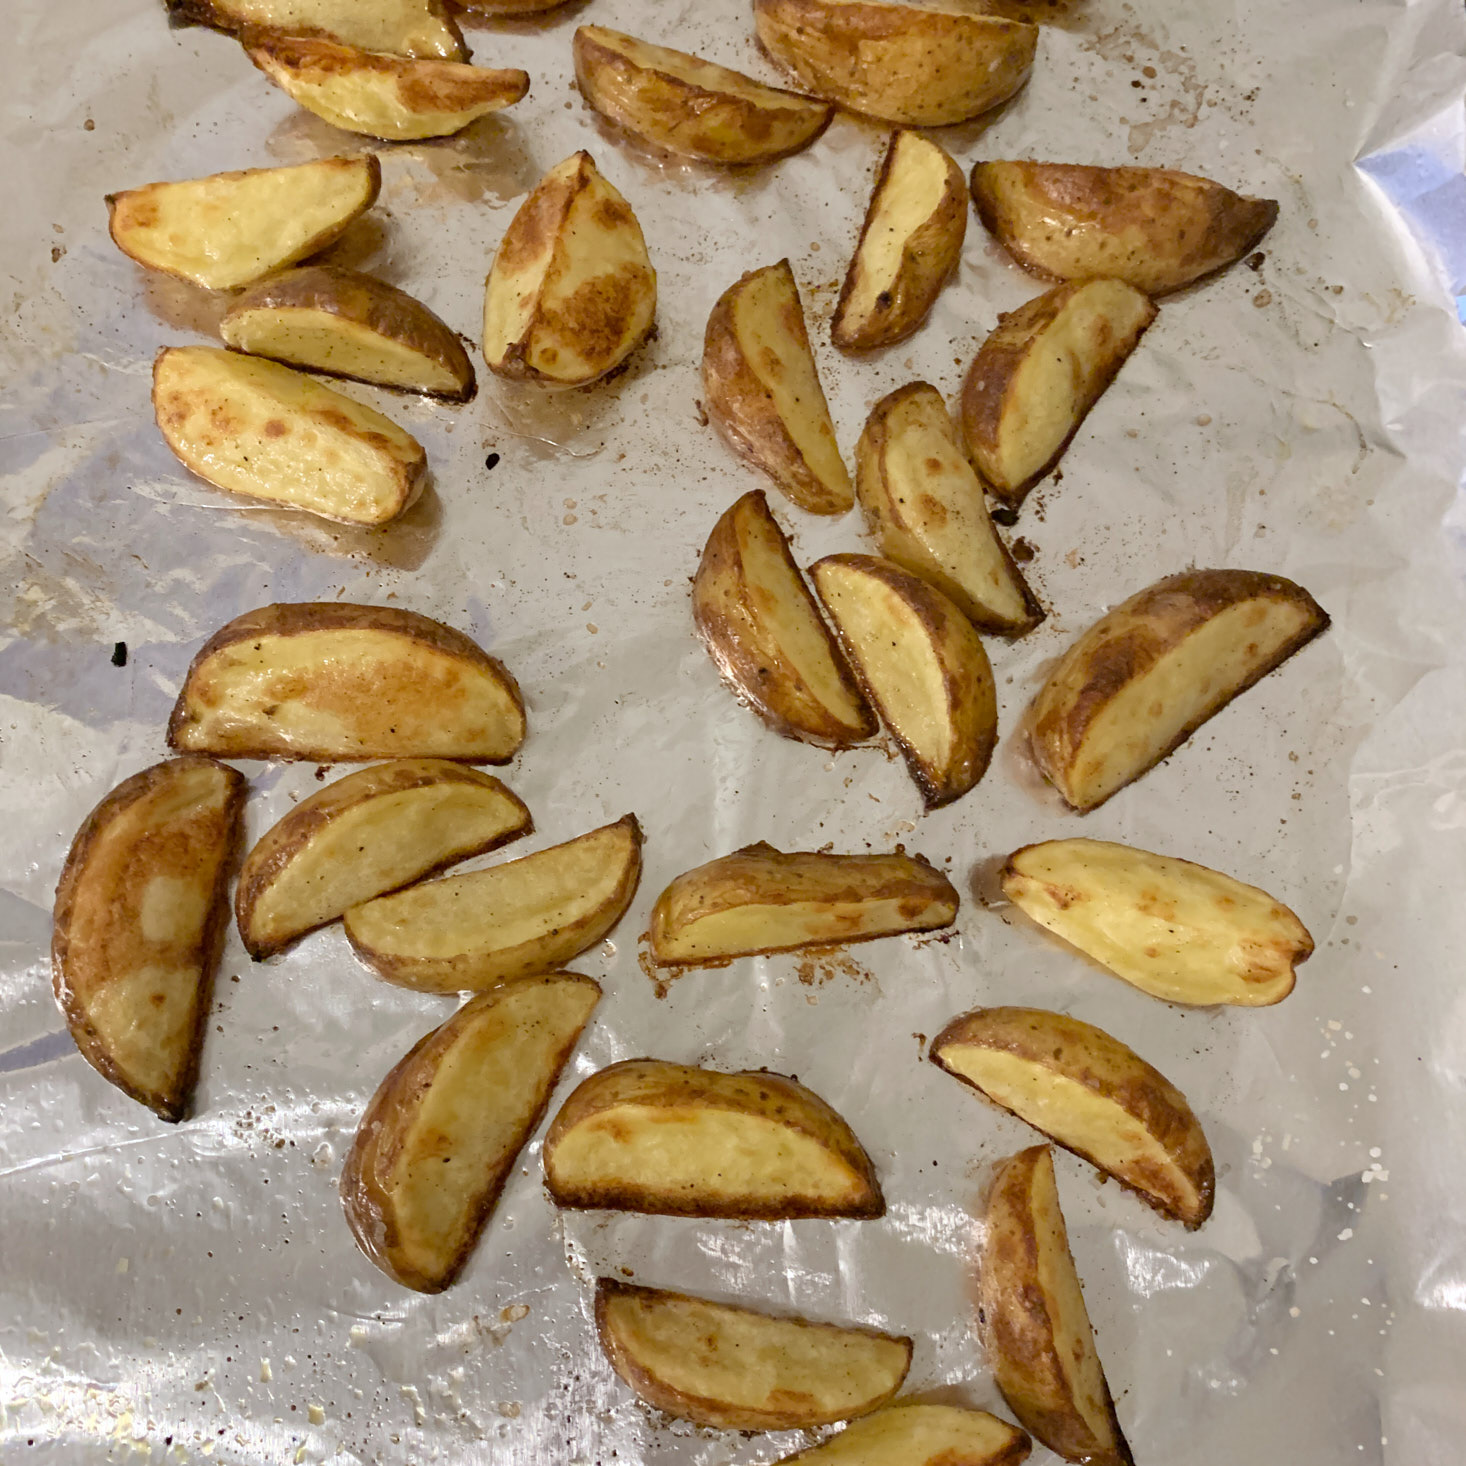 toasted Potato wedges on baking sheet